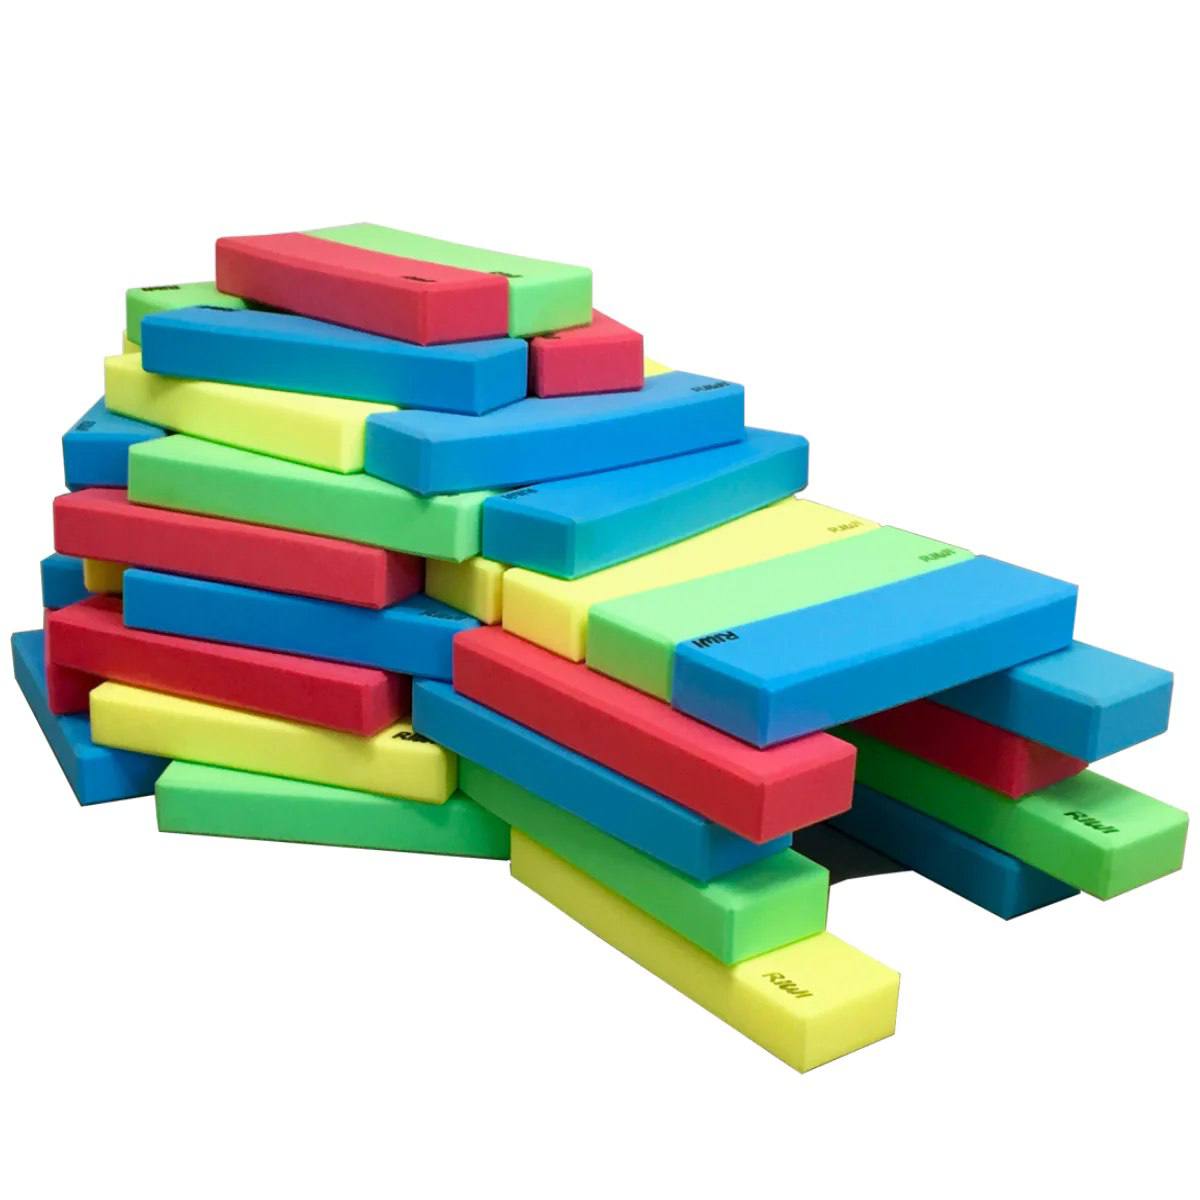 XXL building blocks